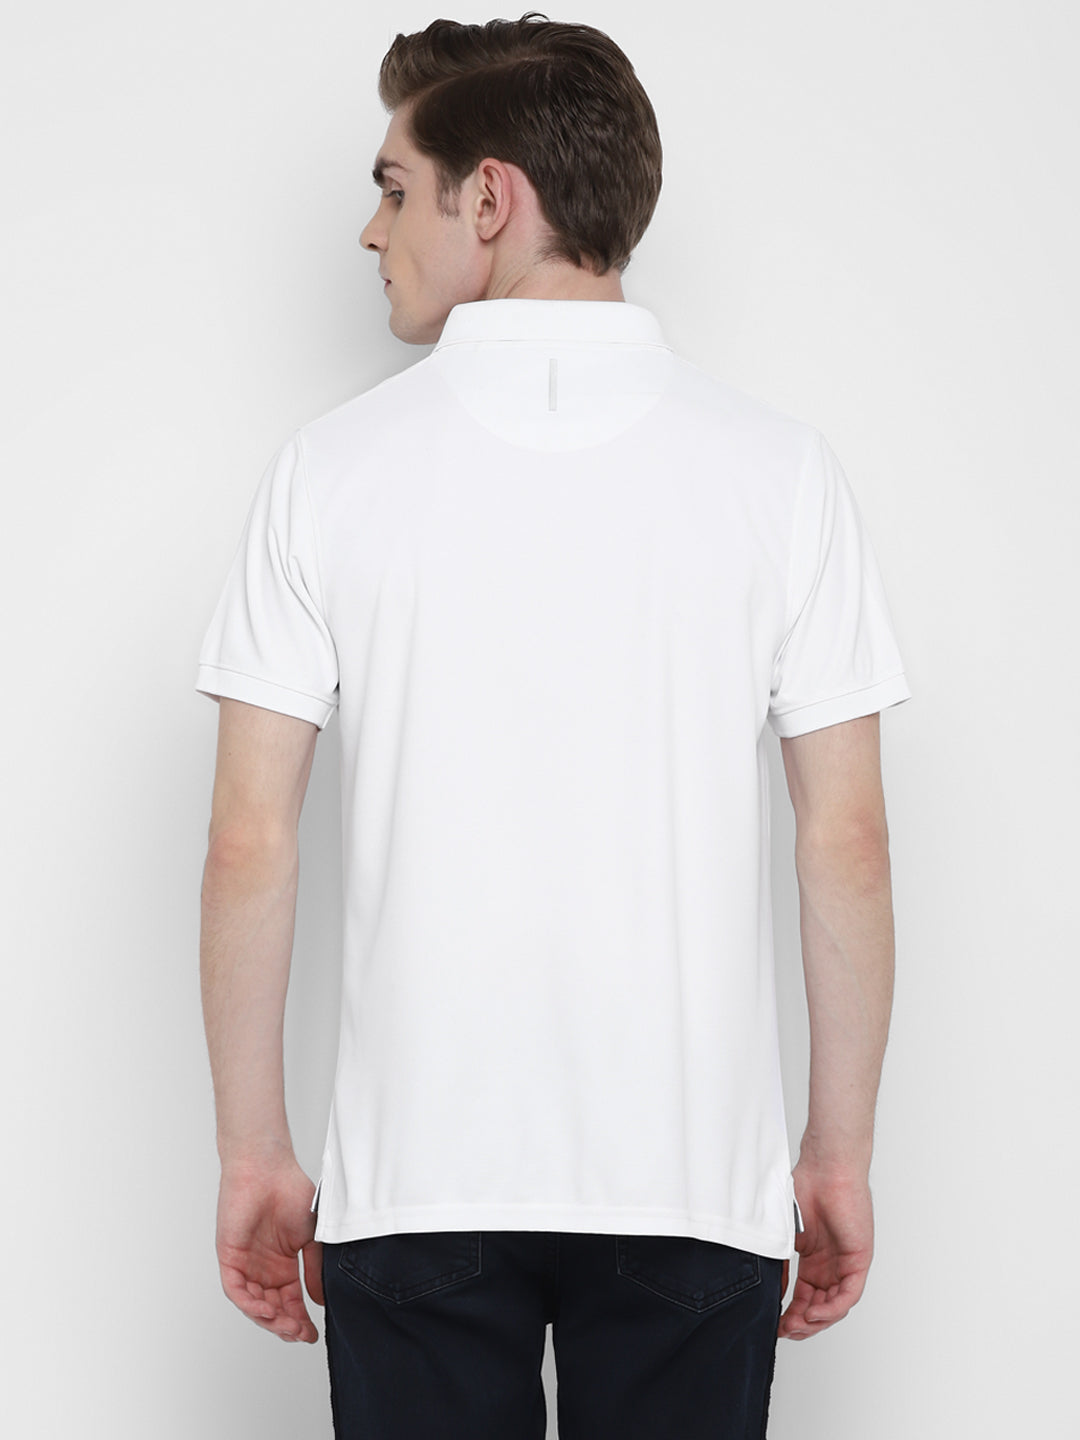 Kooltex Polo T-Shirt For Men - White